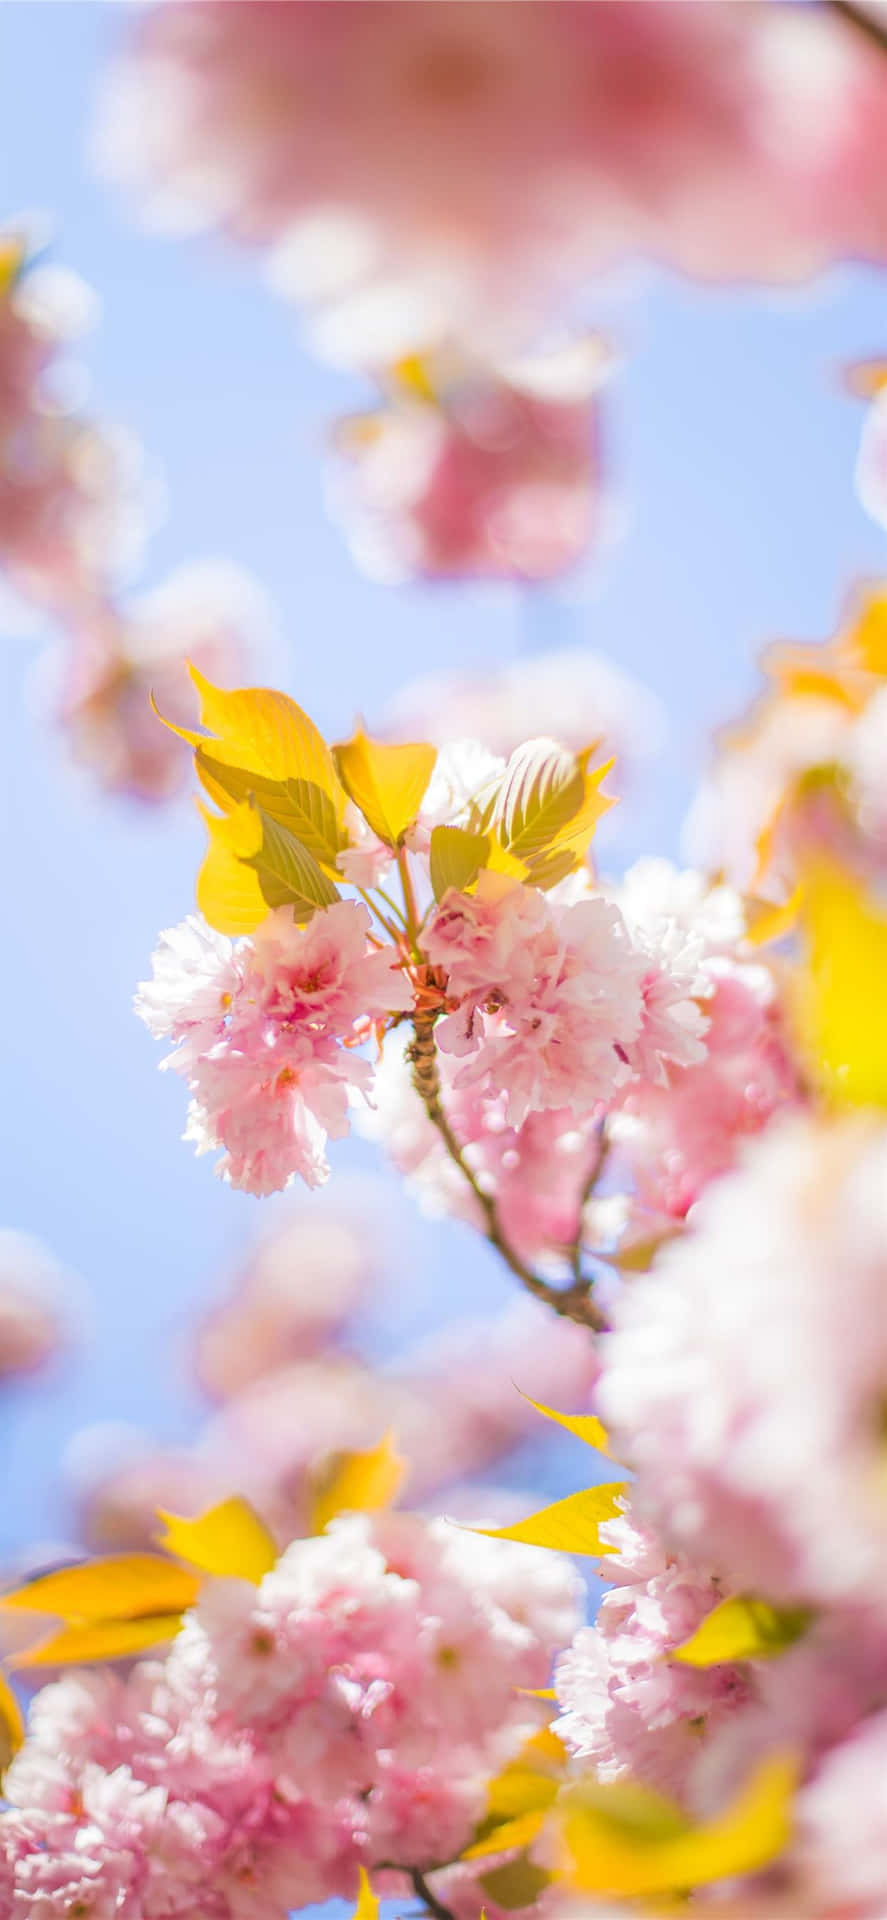 Ventajade La Primavera Con La Belleza De La Naturaleza: Cerezos Rosados En Florismos Fondo de pantalla